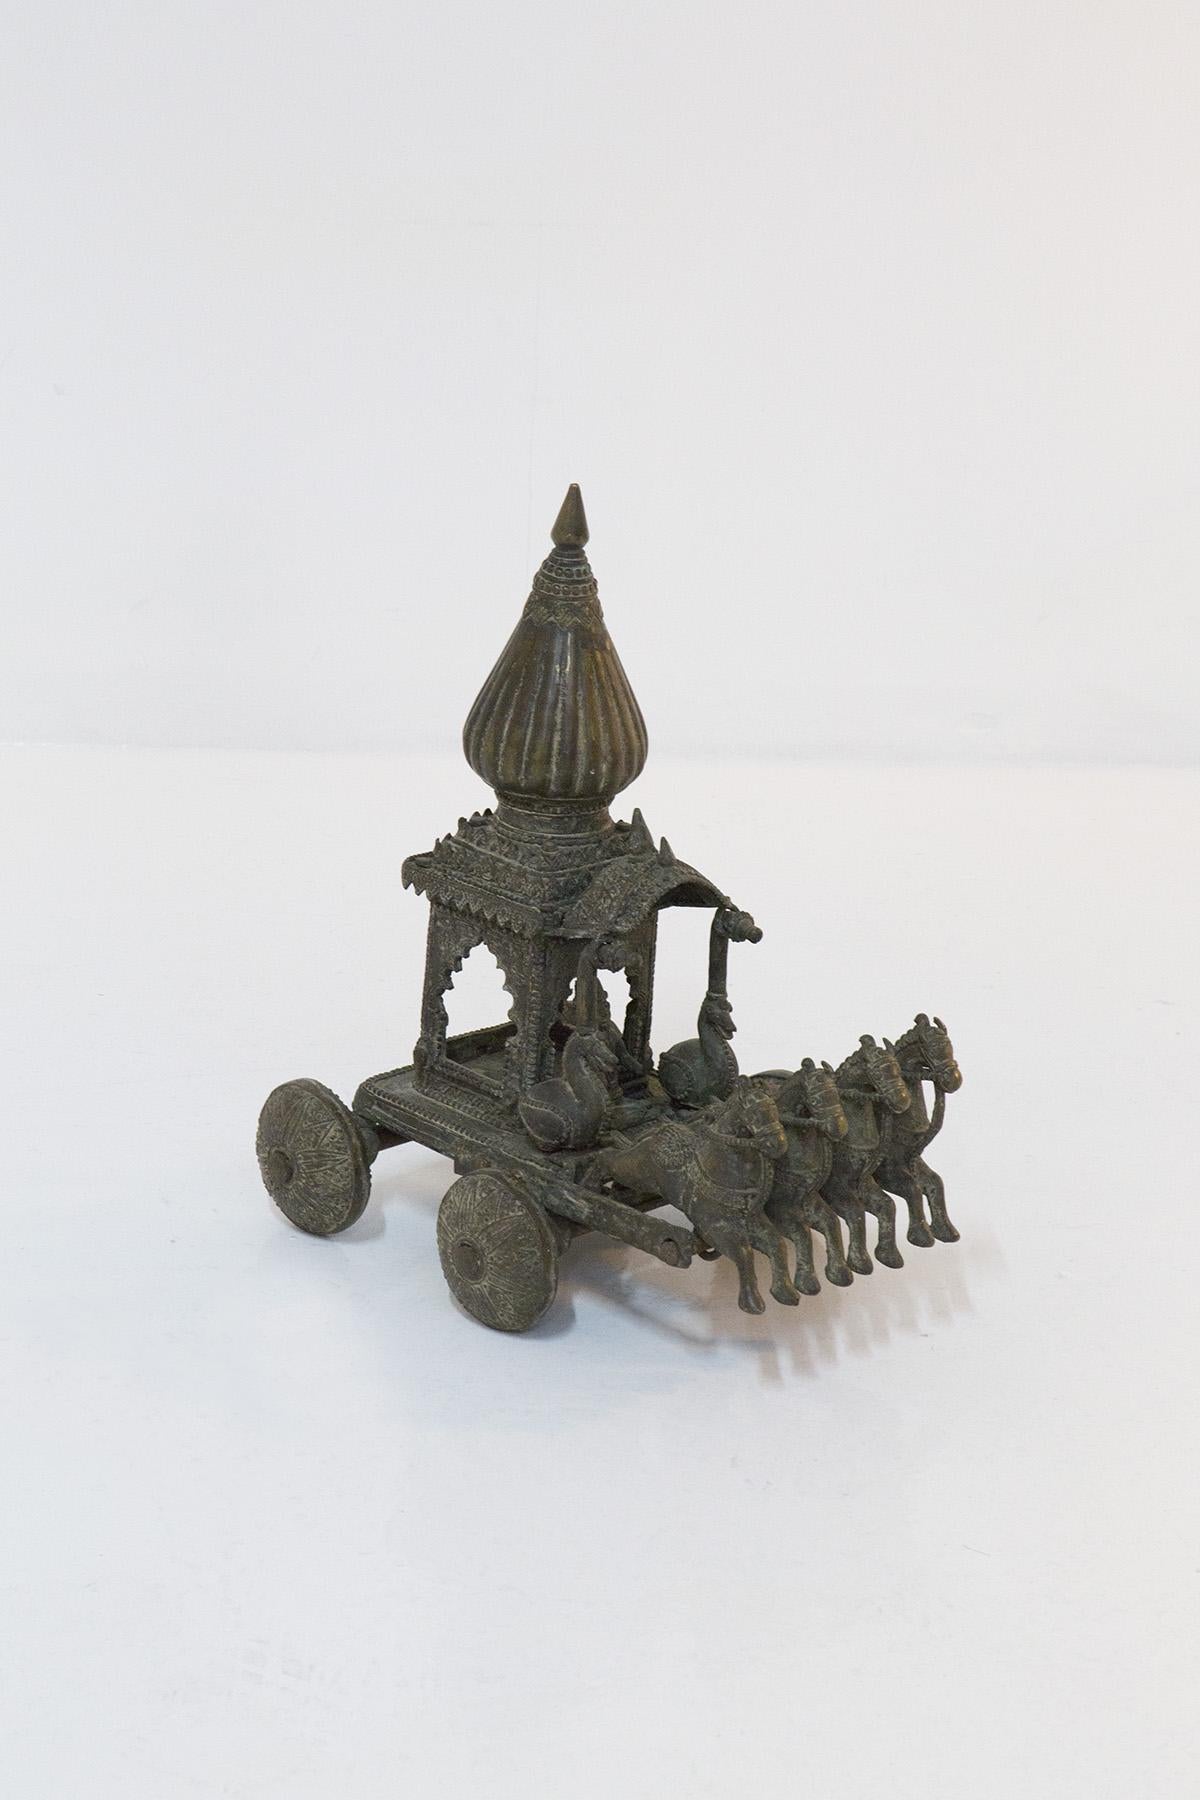 Geschweißtes gusseisernes Spielzeug aus der indischen Zeit um 900, das einen Streitwagen mit quadratischem Dach und konischer Kuppel darstellt. Wir können diese Spielzeugstatue als eine Darstellung von Krishnas Rath Gita (Bhagavad Gita)